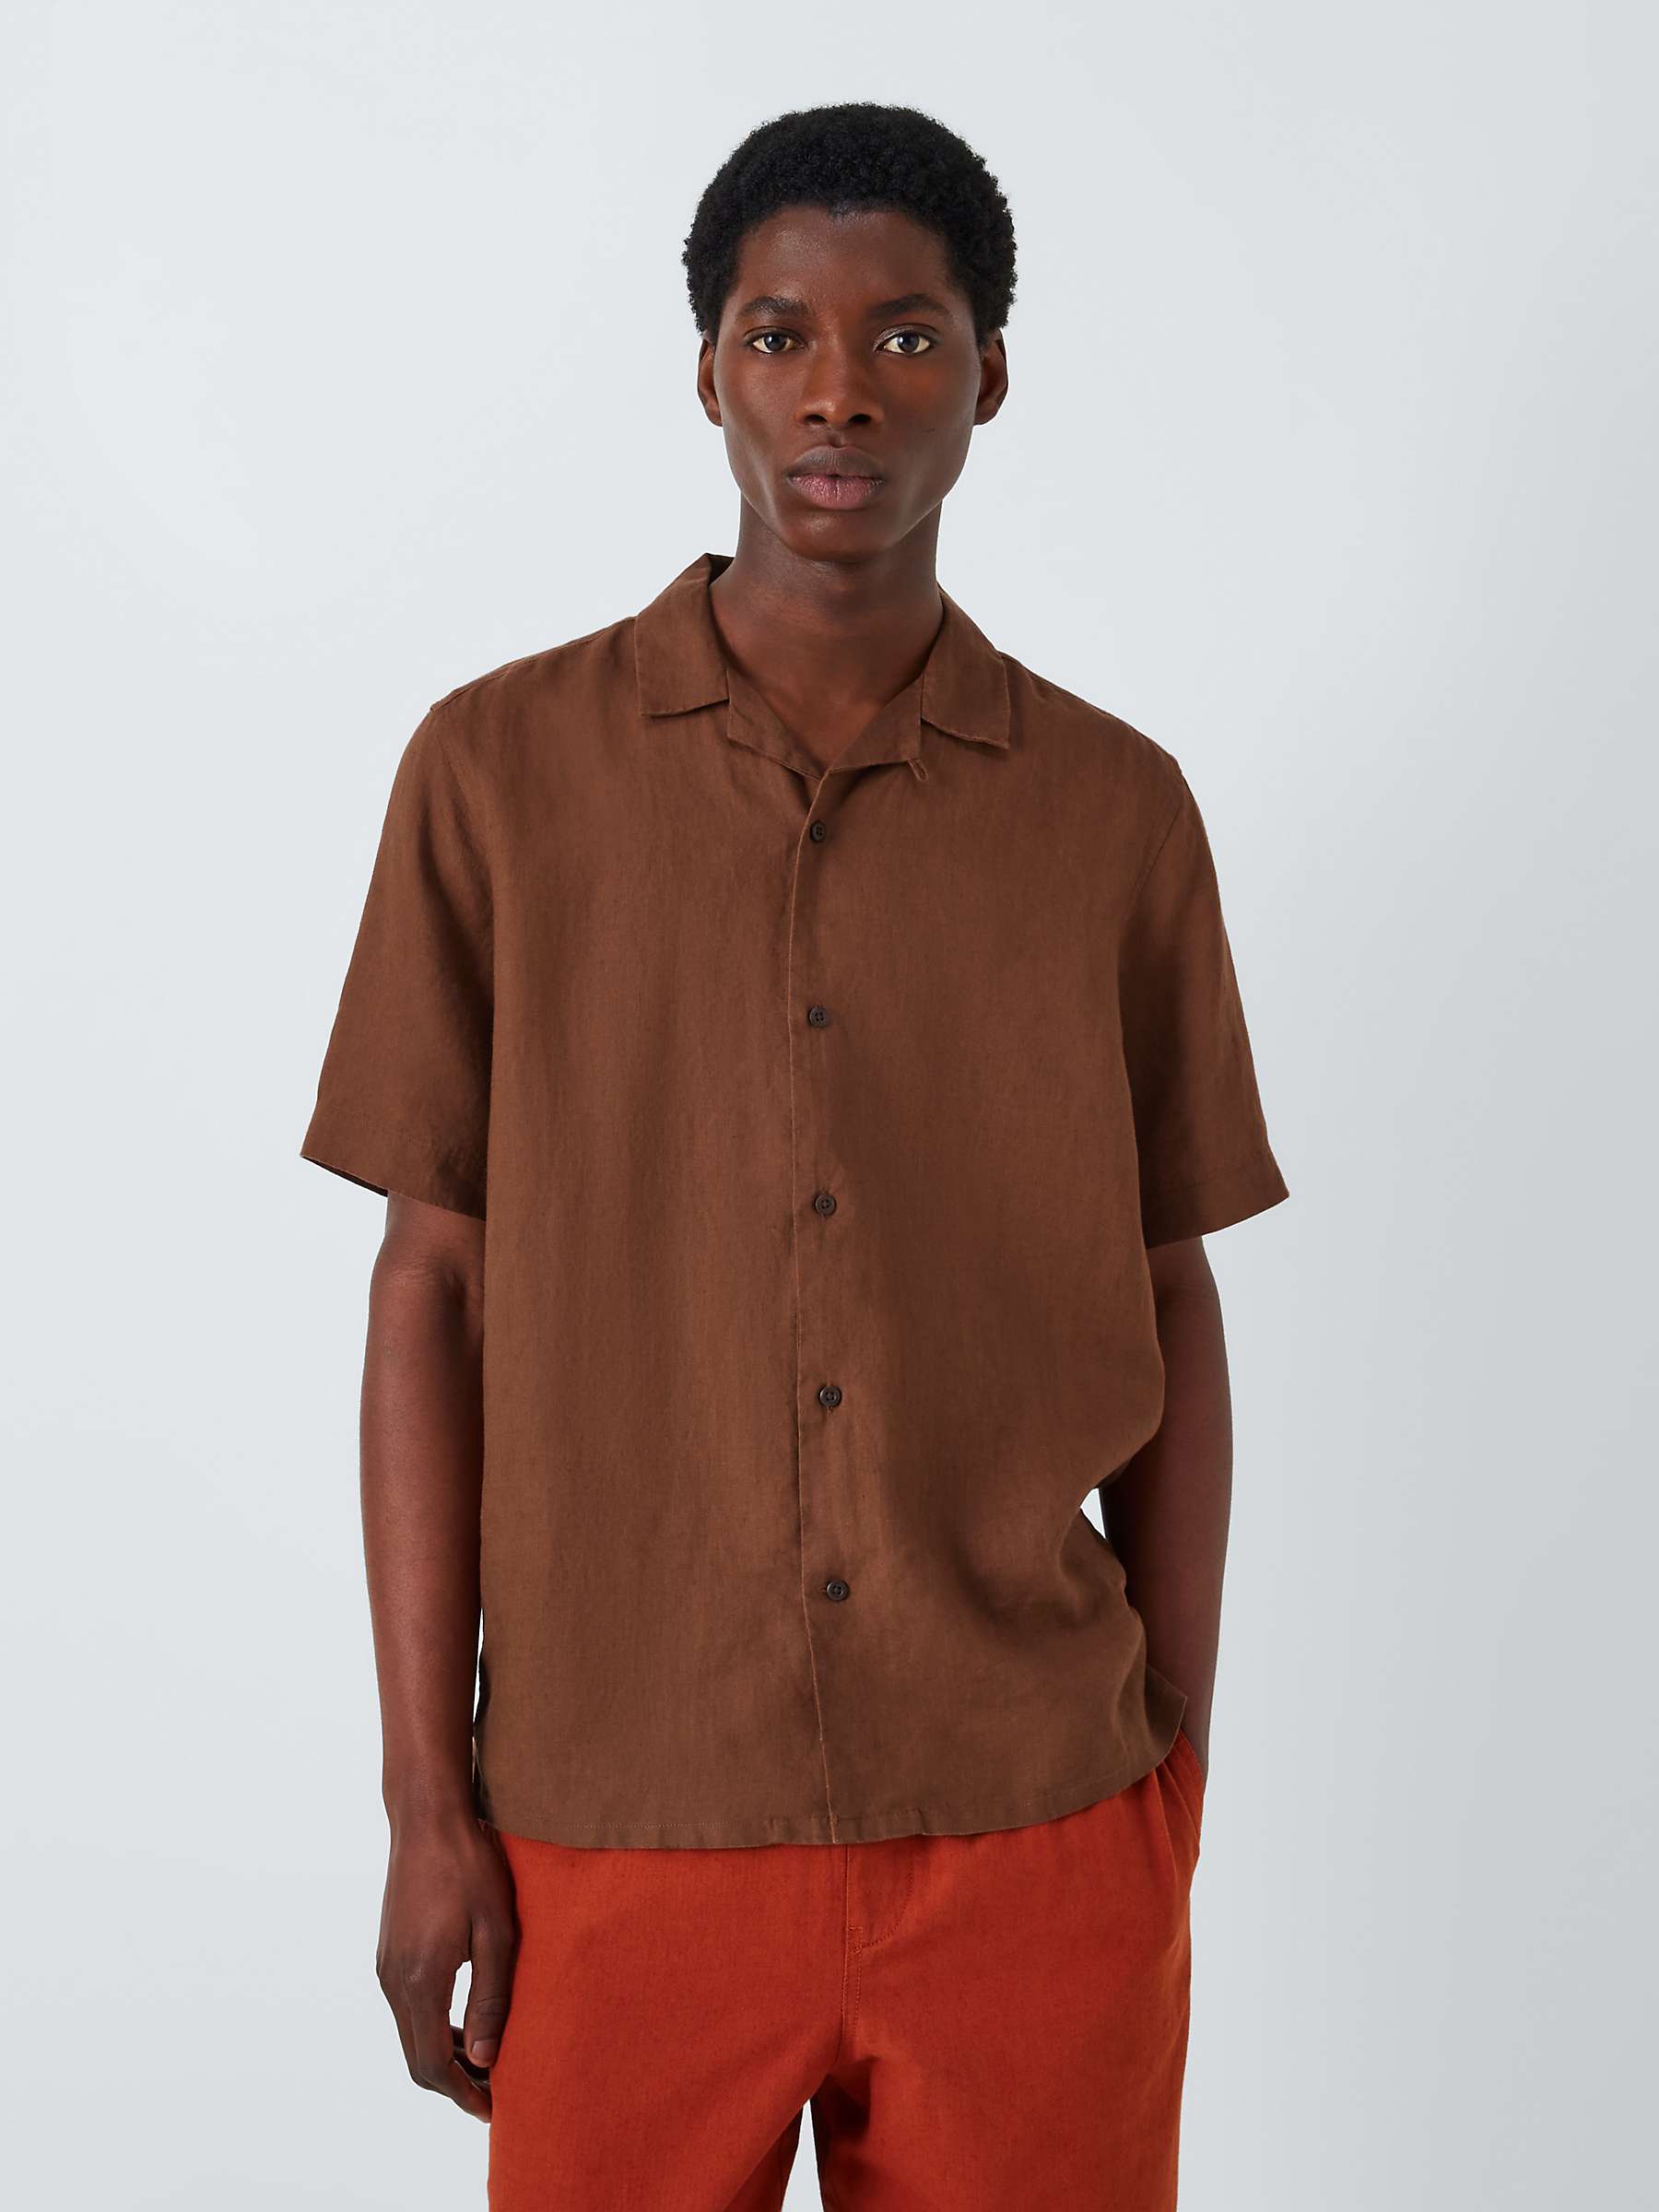 Buy John Lewis Linen Revere Collar Short Sleeve Shirt Online at johnlewis.com